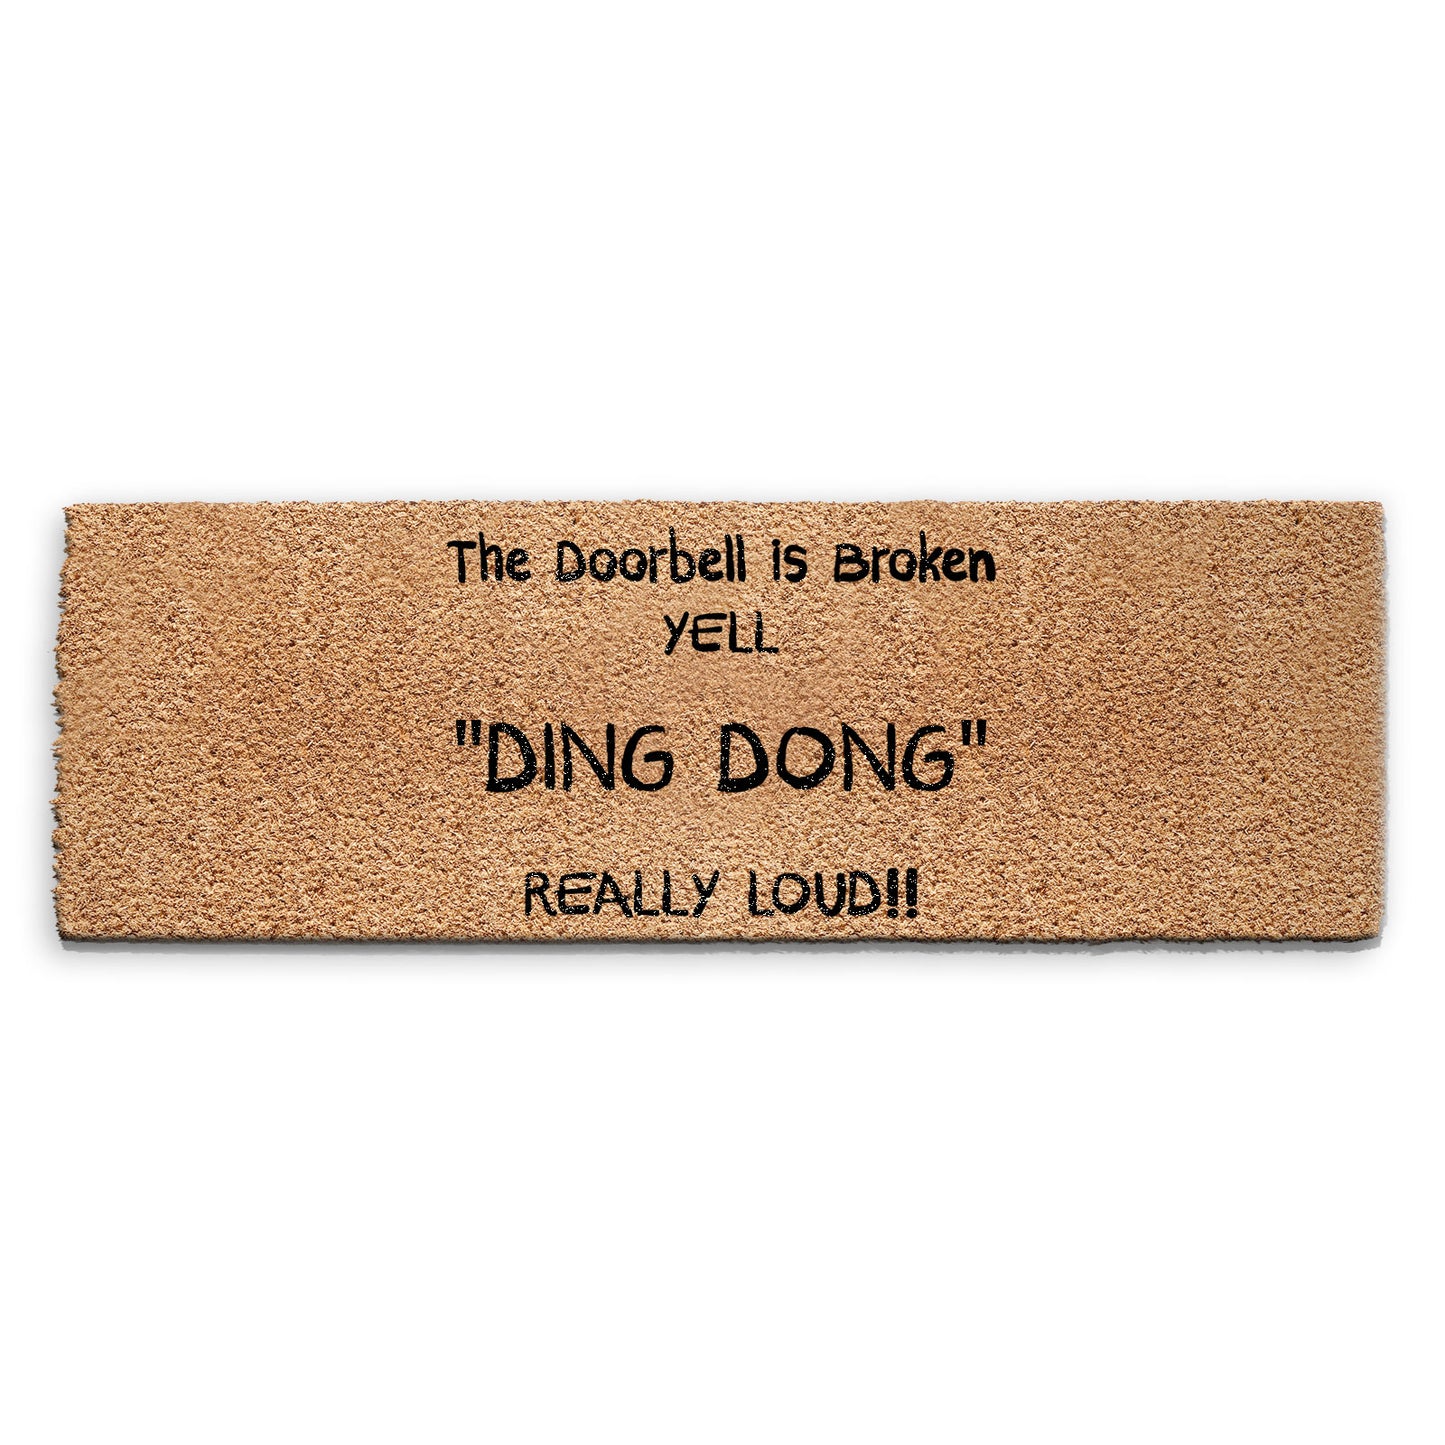 Coir Doormat - Funny Ding Dong Doorbell